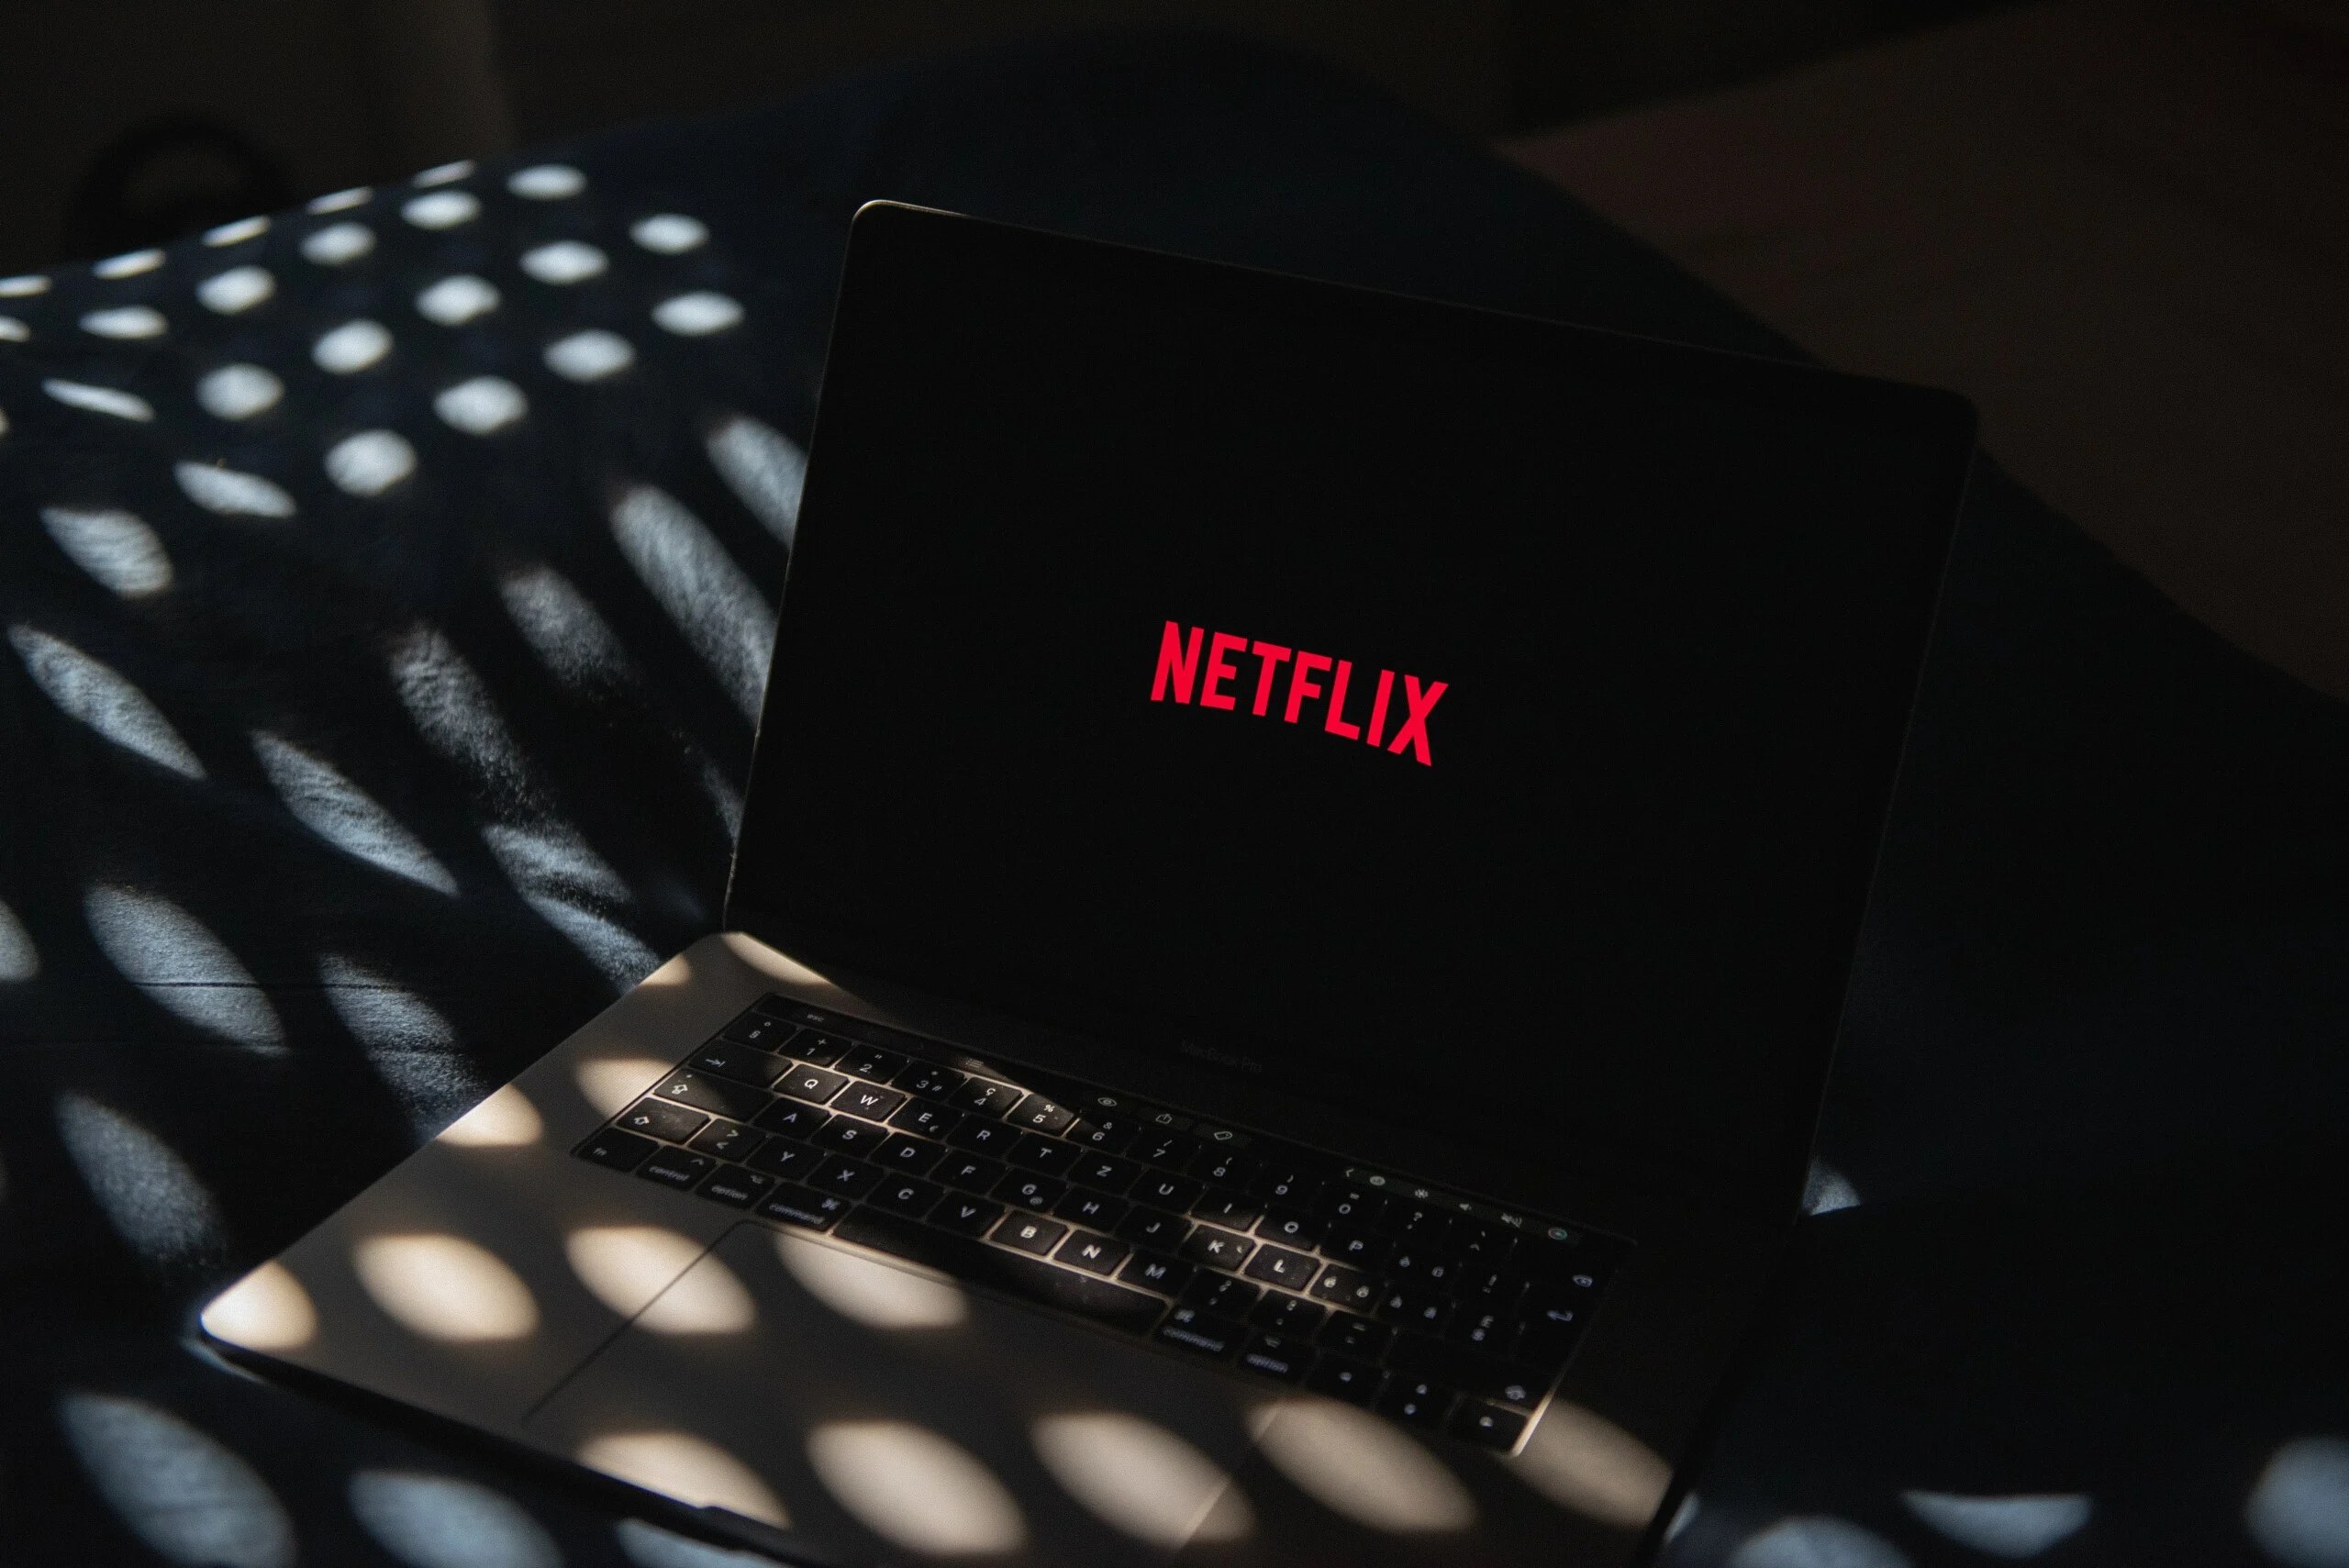 Le problème de Netflix, ce n’est pas le prix de l’abonnement ni le partage de compte